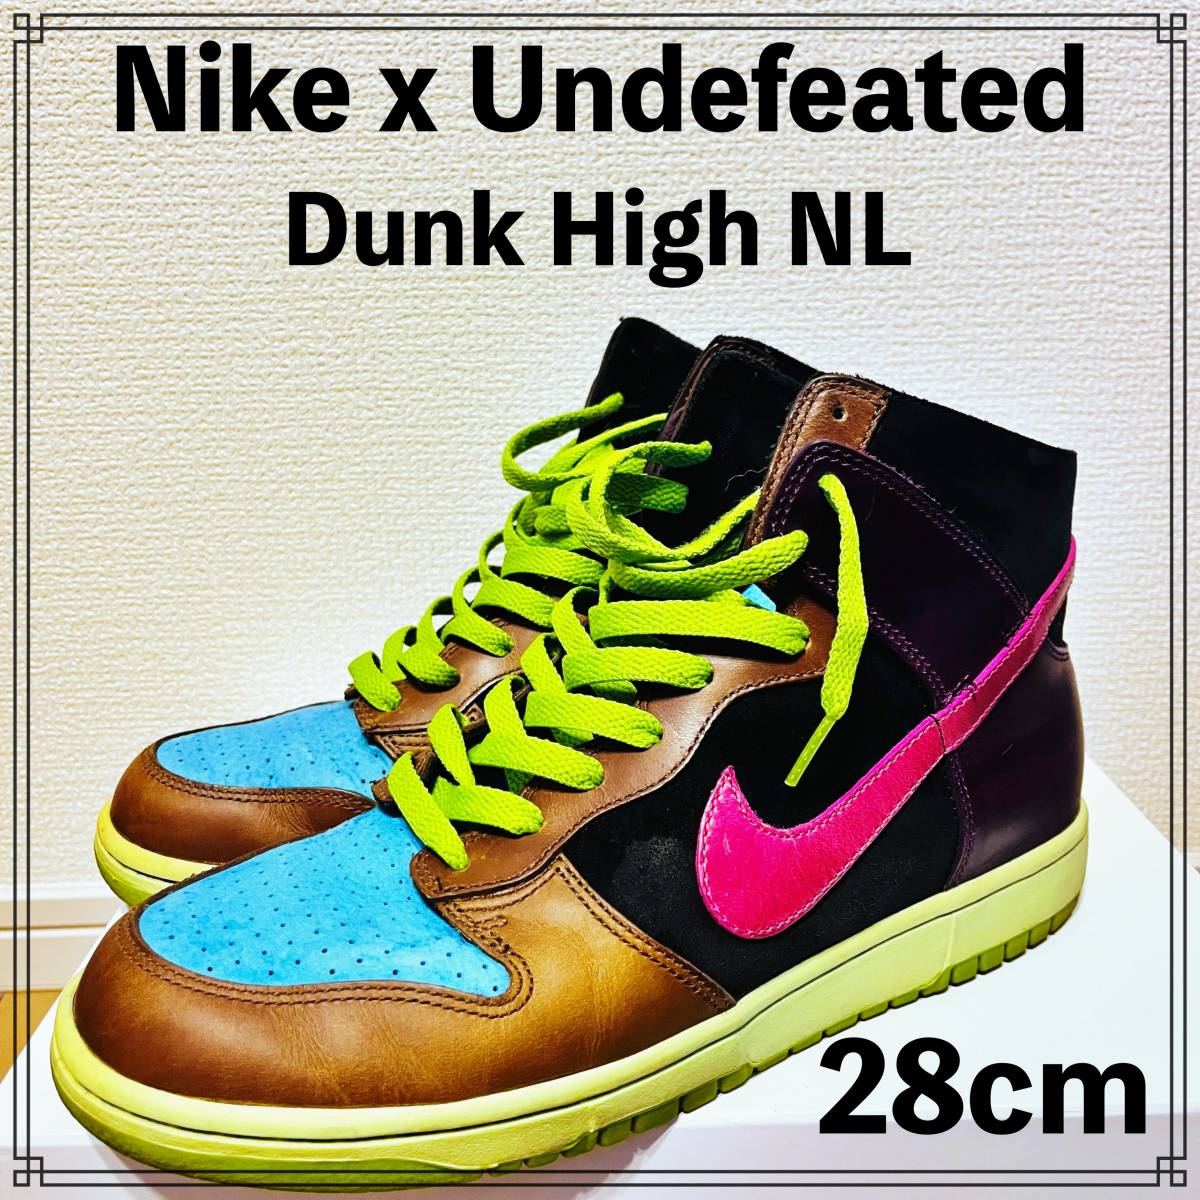 【美中古】NIKE x Undefeated DUNK HIGH NL 28cm ナイキ アンディーフィーテッド ダンク